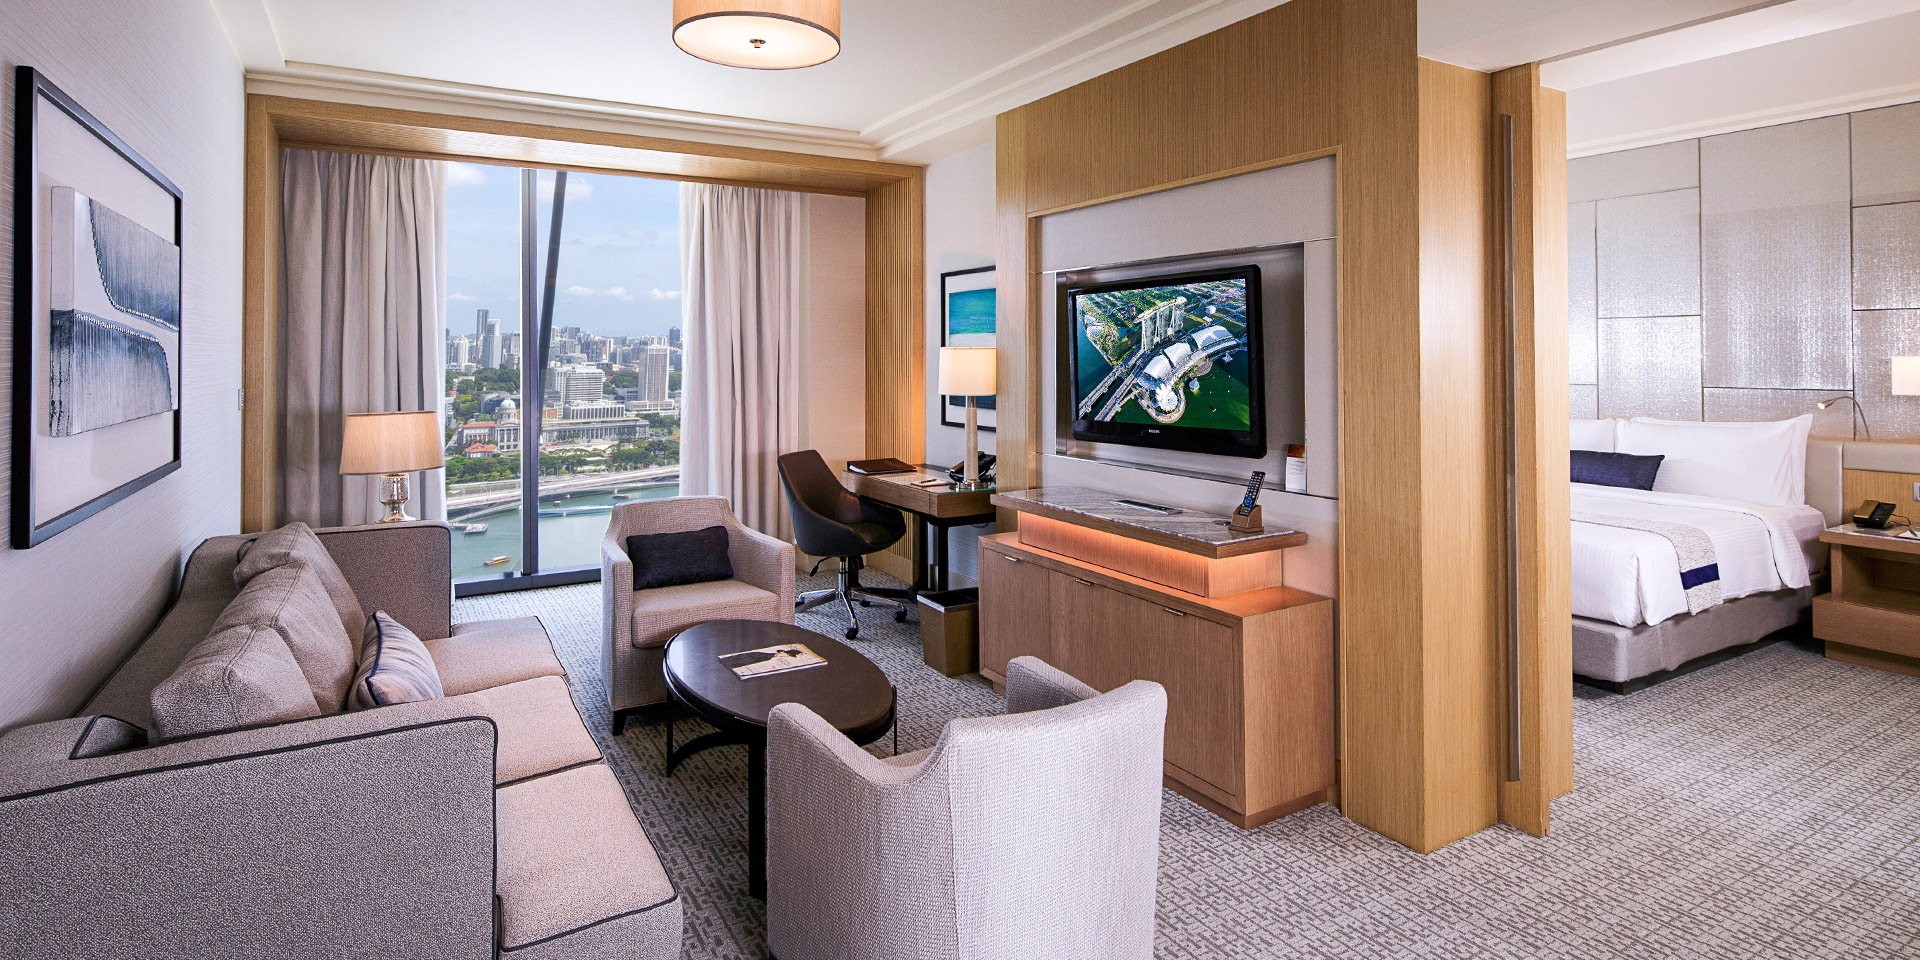 Kamar Orchid Suite di Hotel Marina Bay Sands dengan Tempat Tidur ukuran King dan Pemandangan Kota